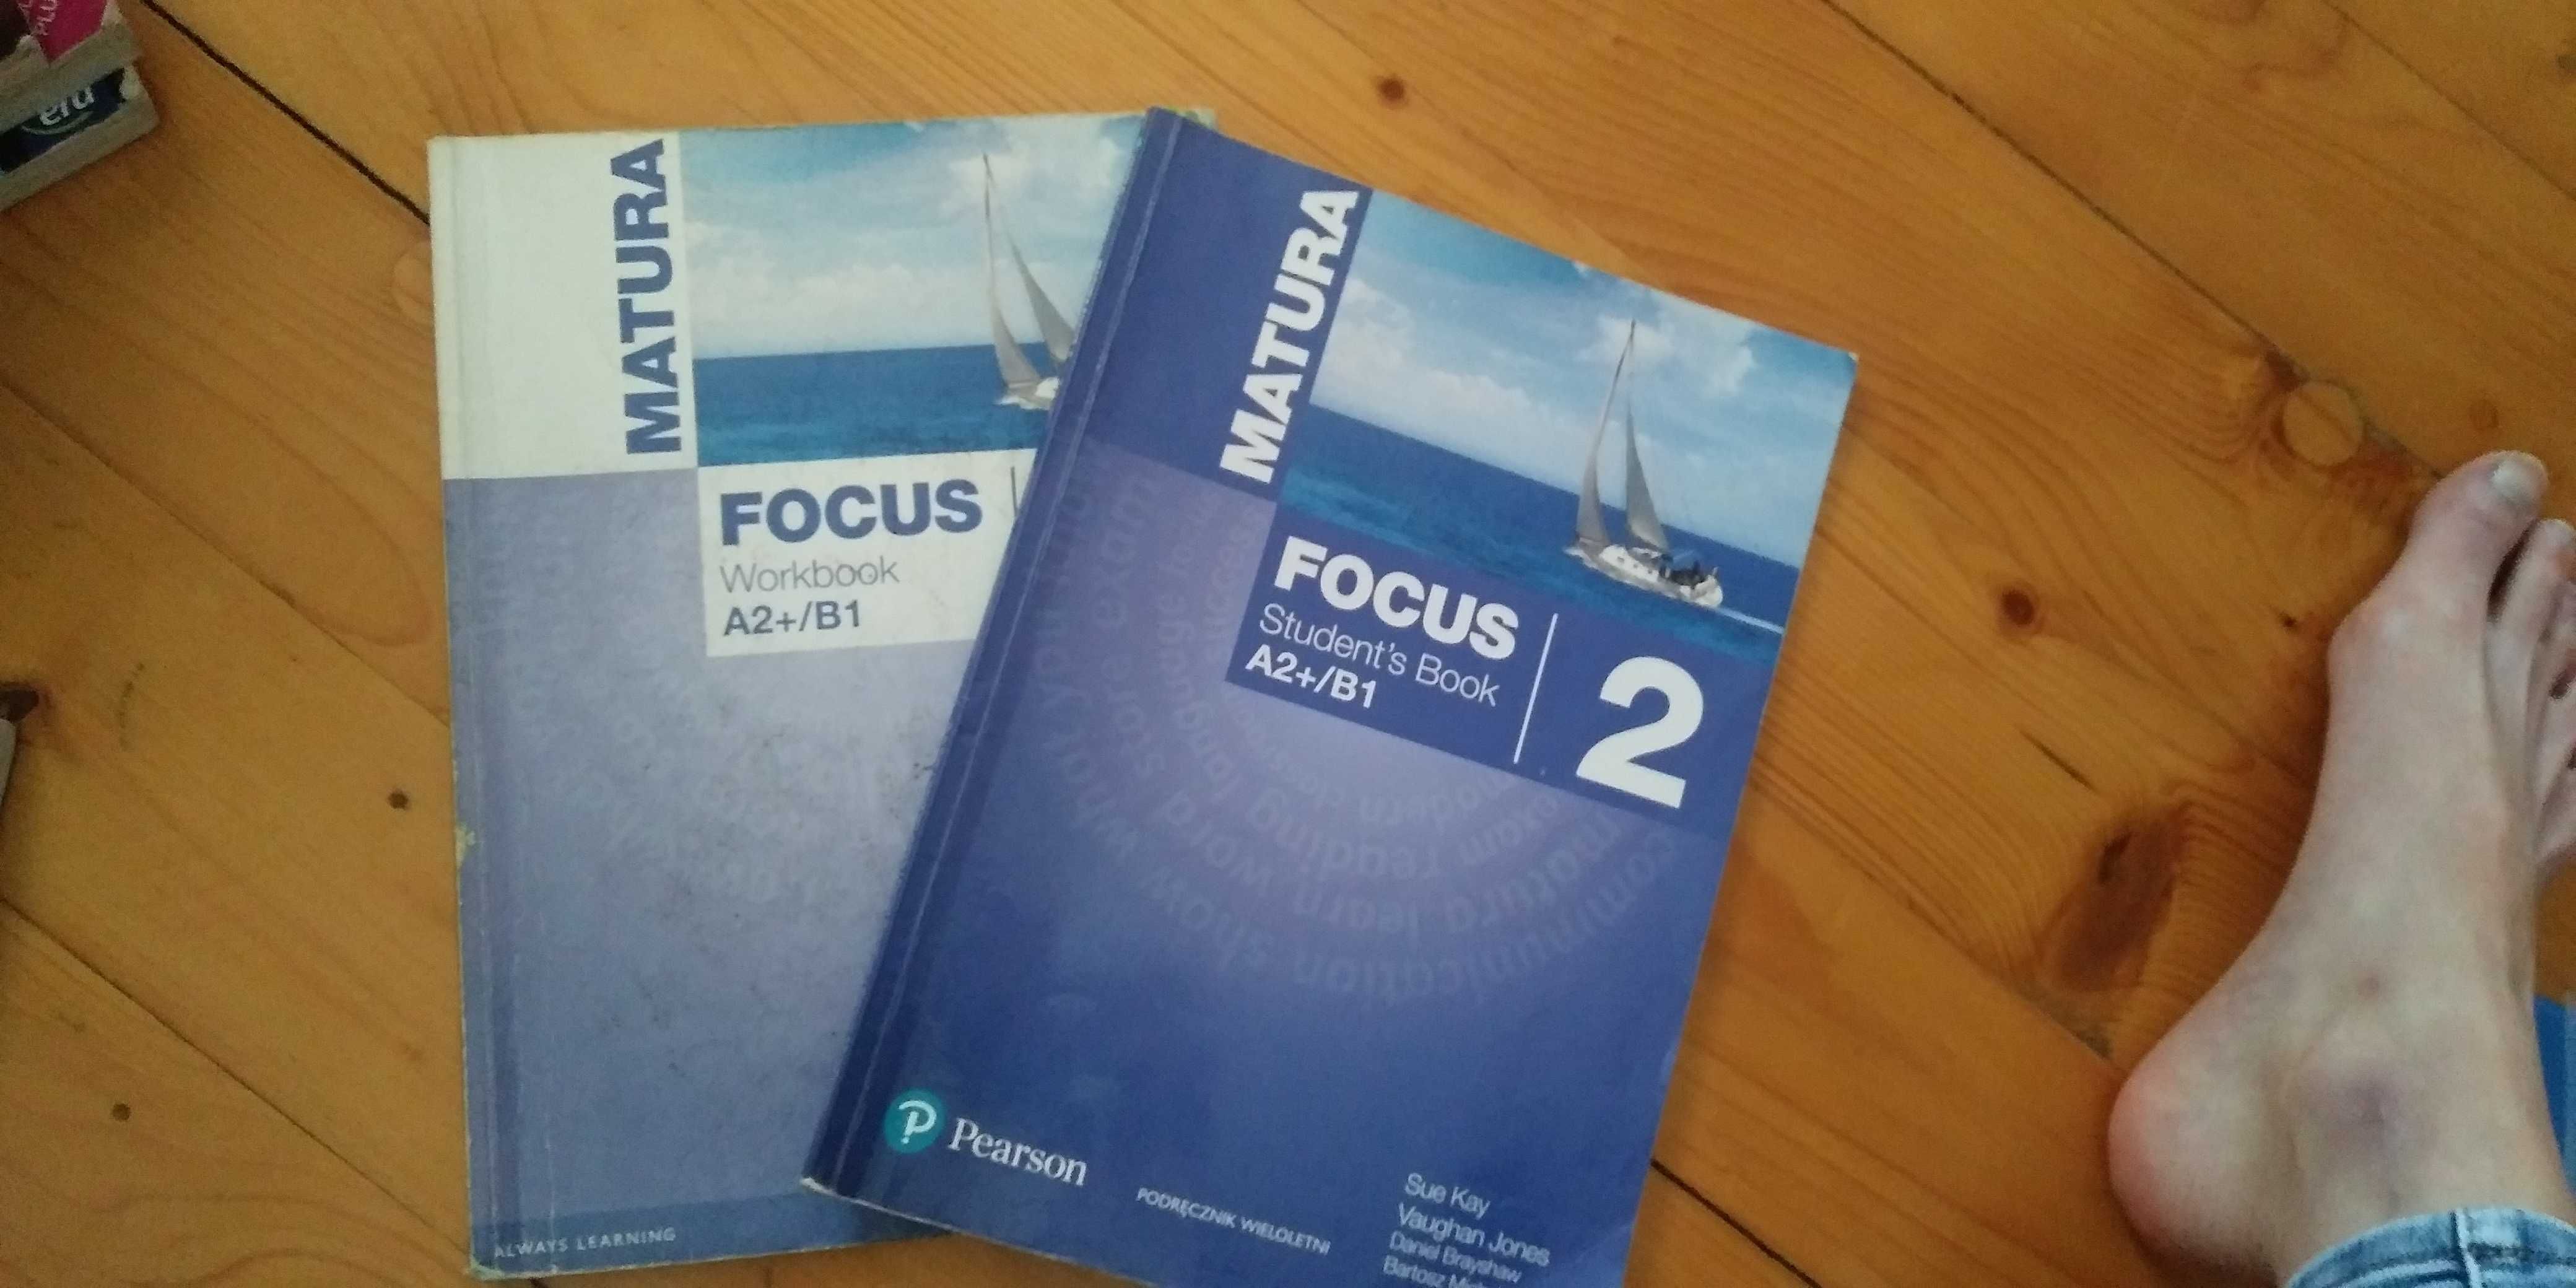 Focus 2 Matura Pearson